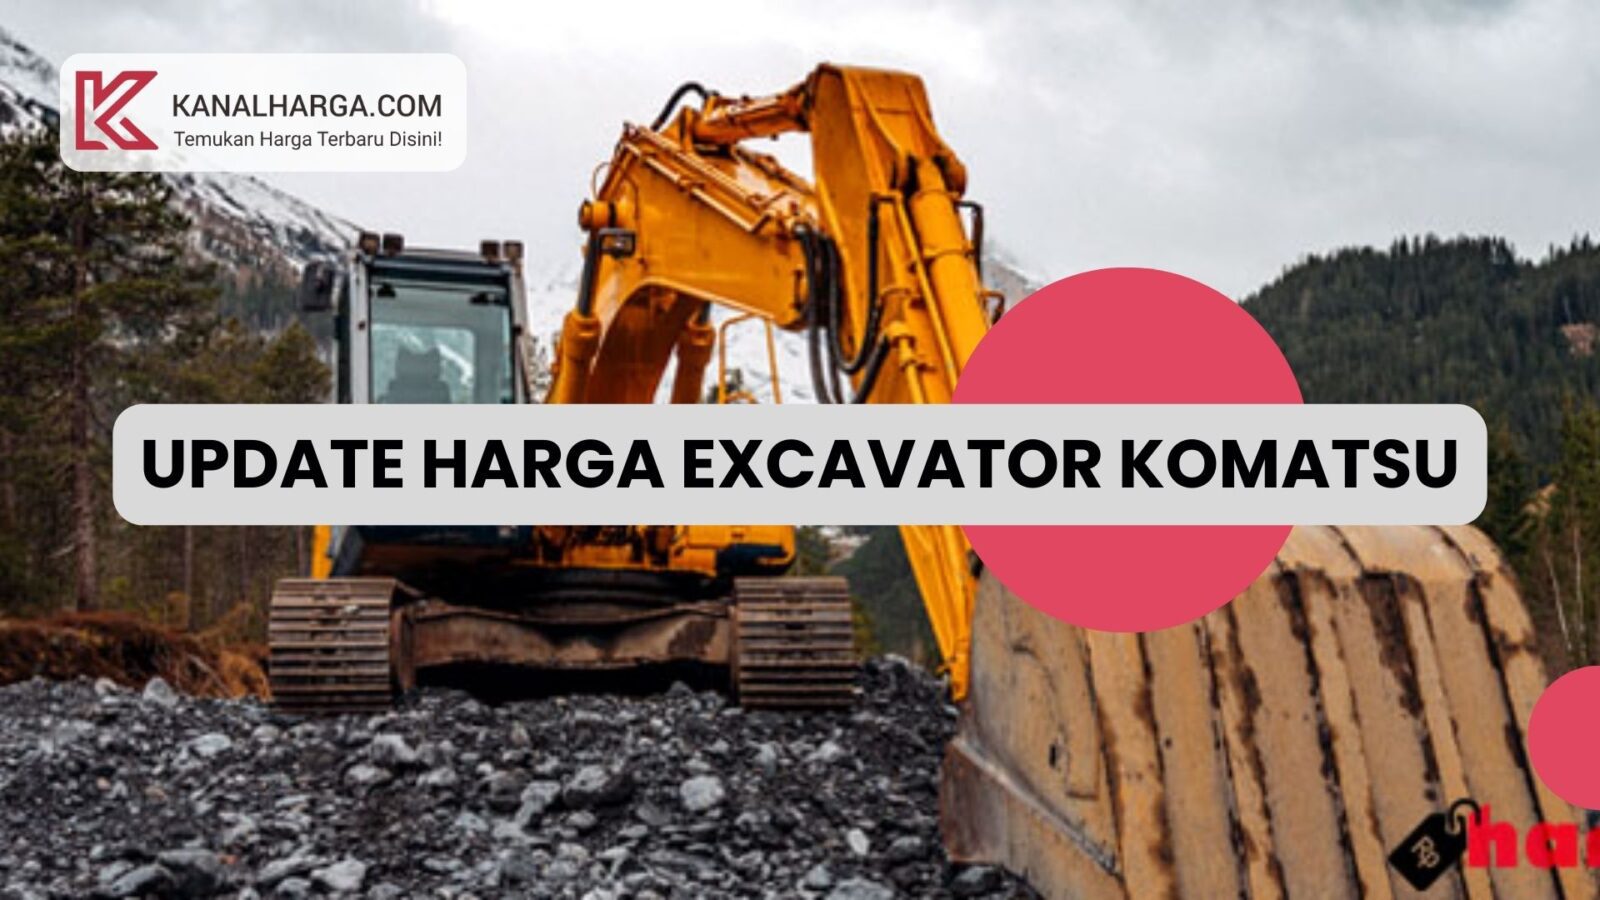 Update Harga Excavator Komatsu Update Harga Excavator Komatsu